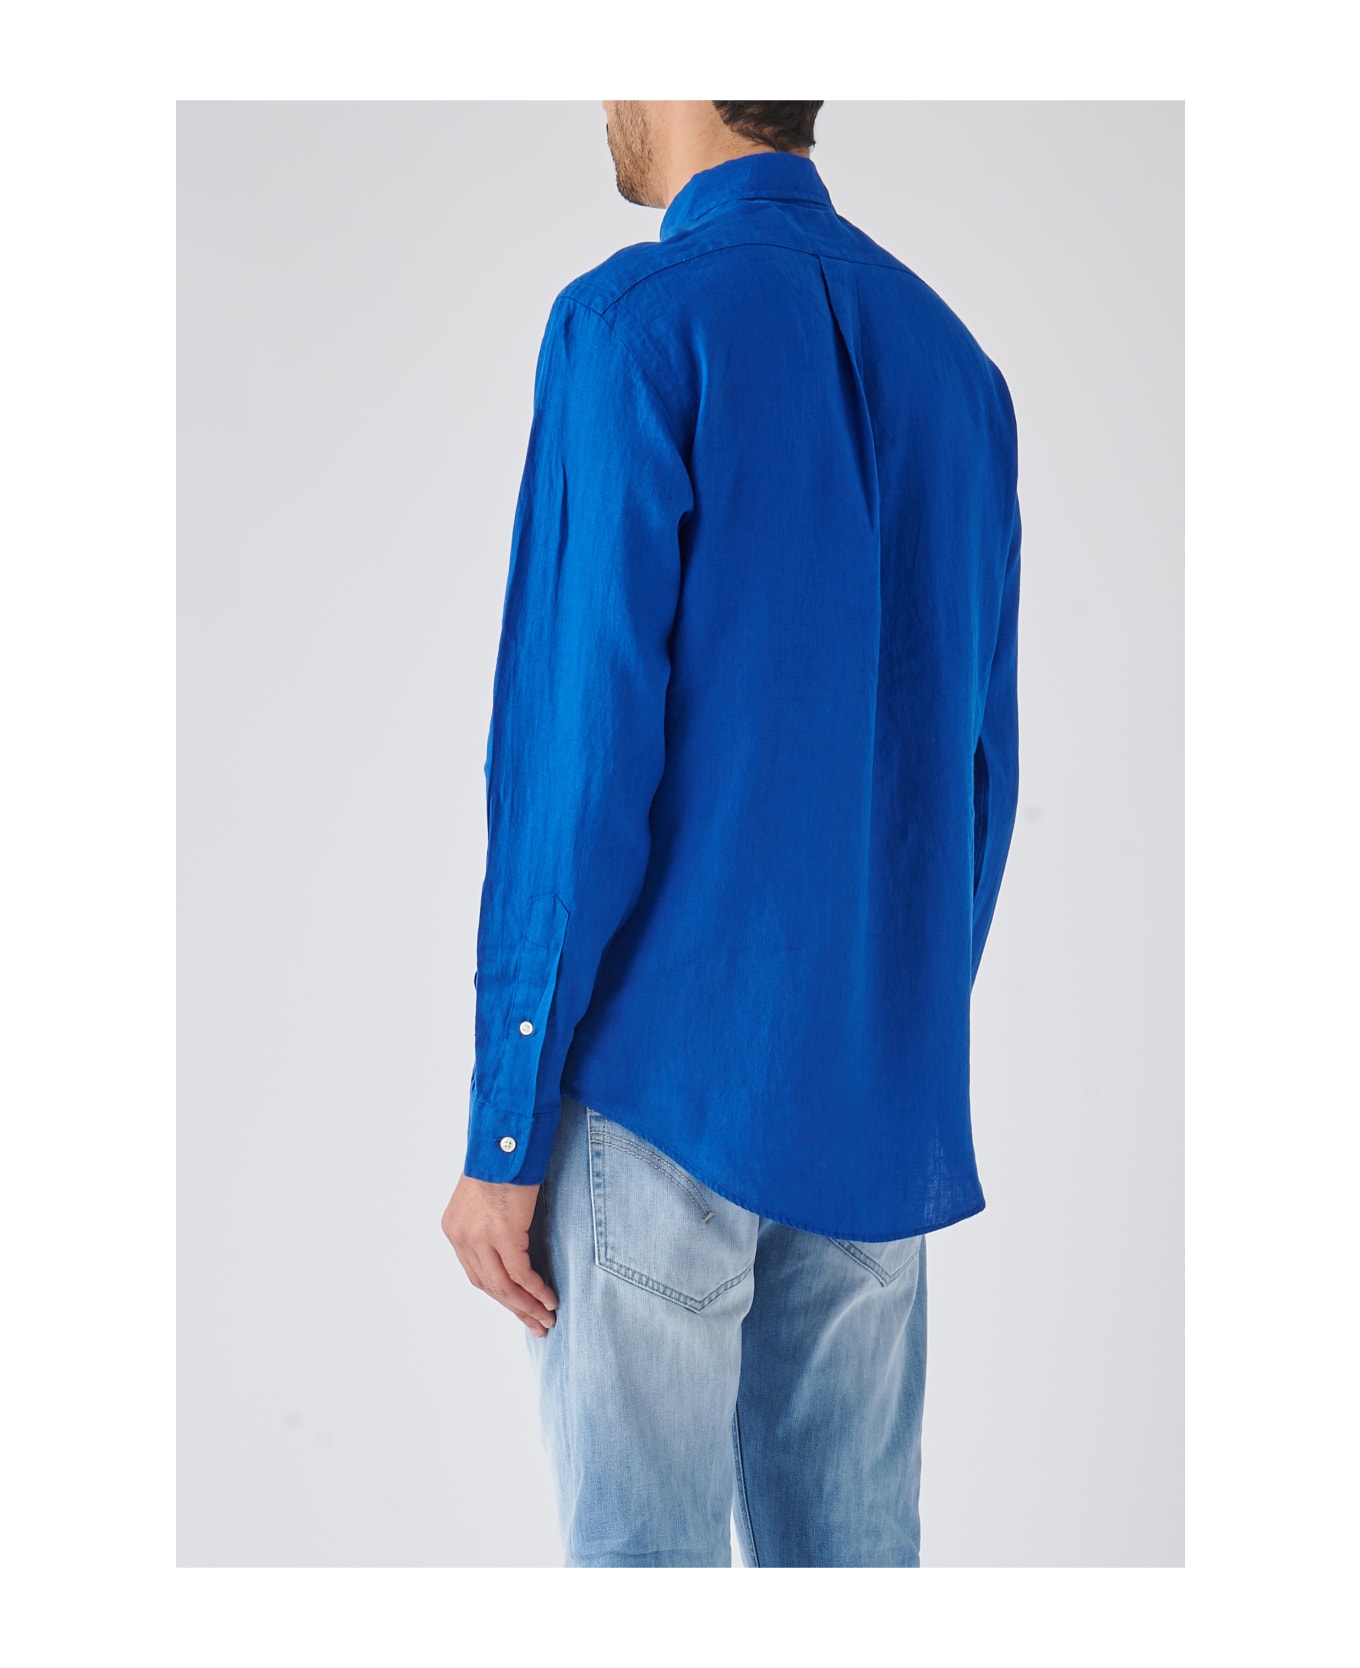 Polo Ralph Lauren Long Sleeve Sport Shirt Shirt - ROYAL